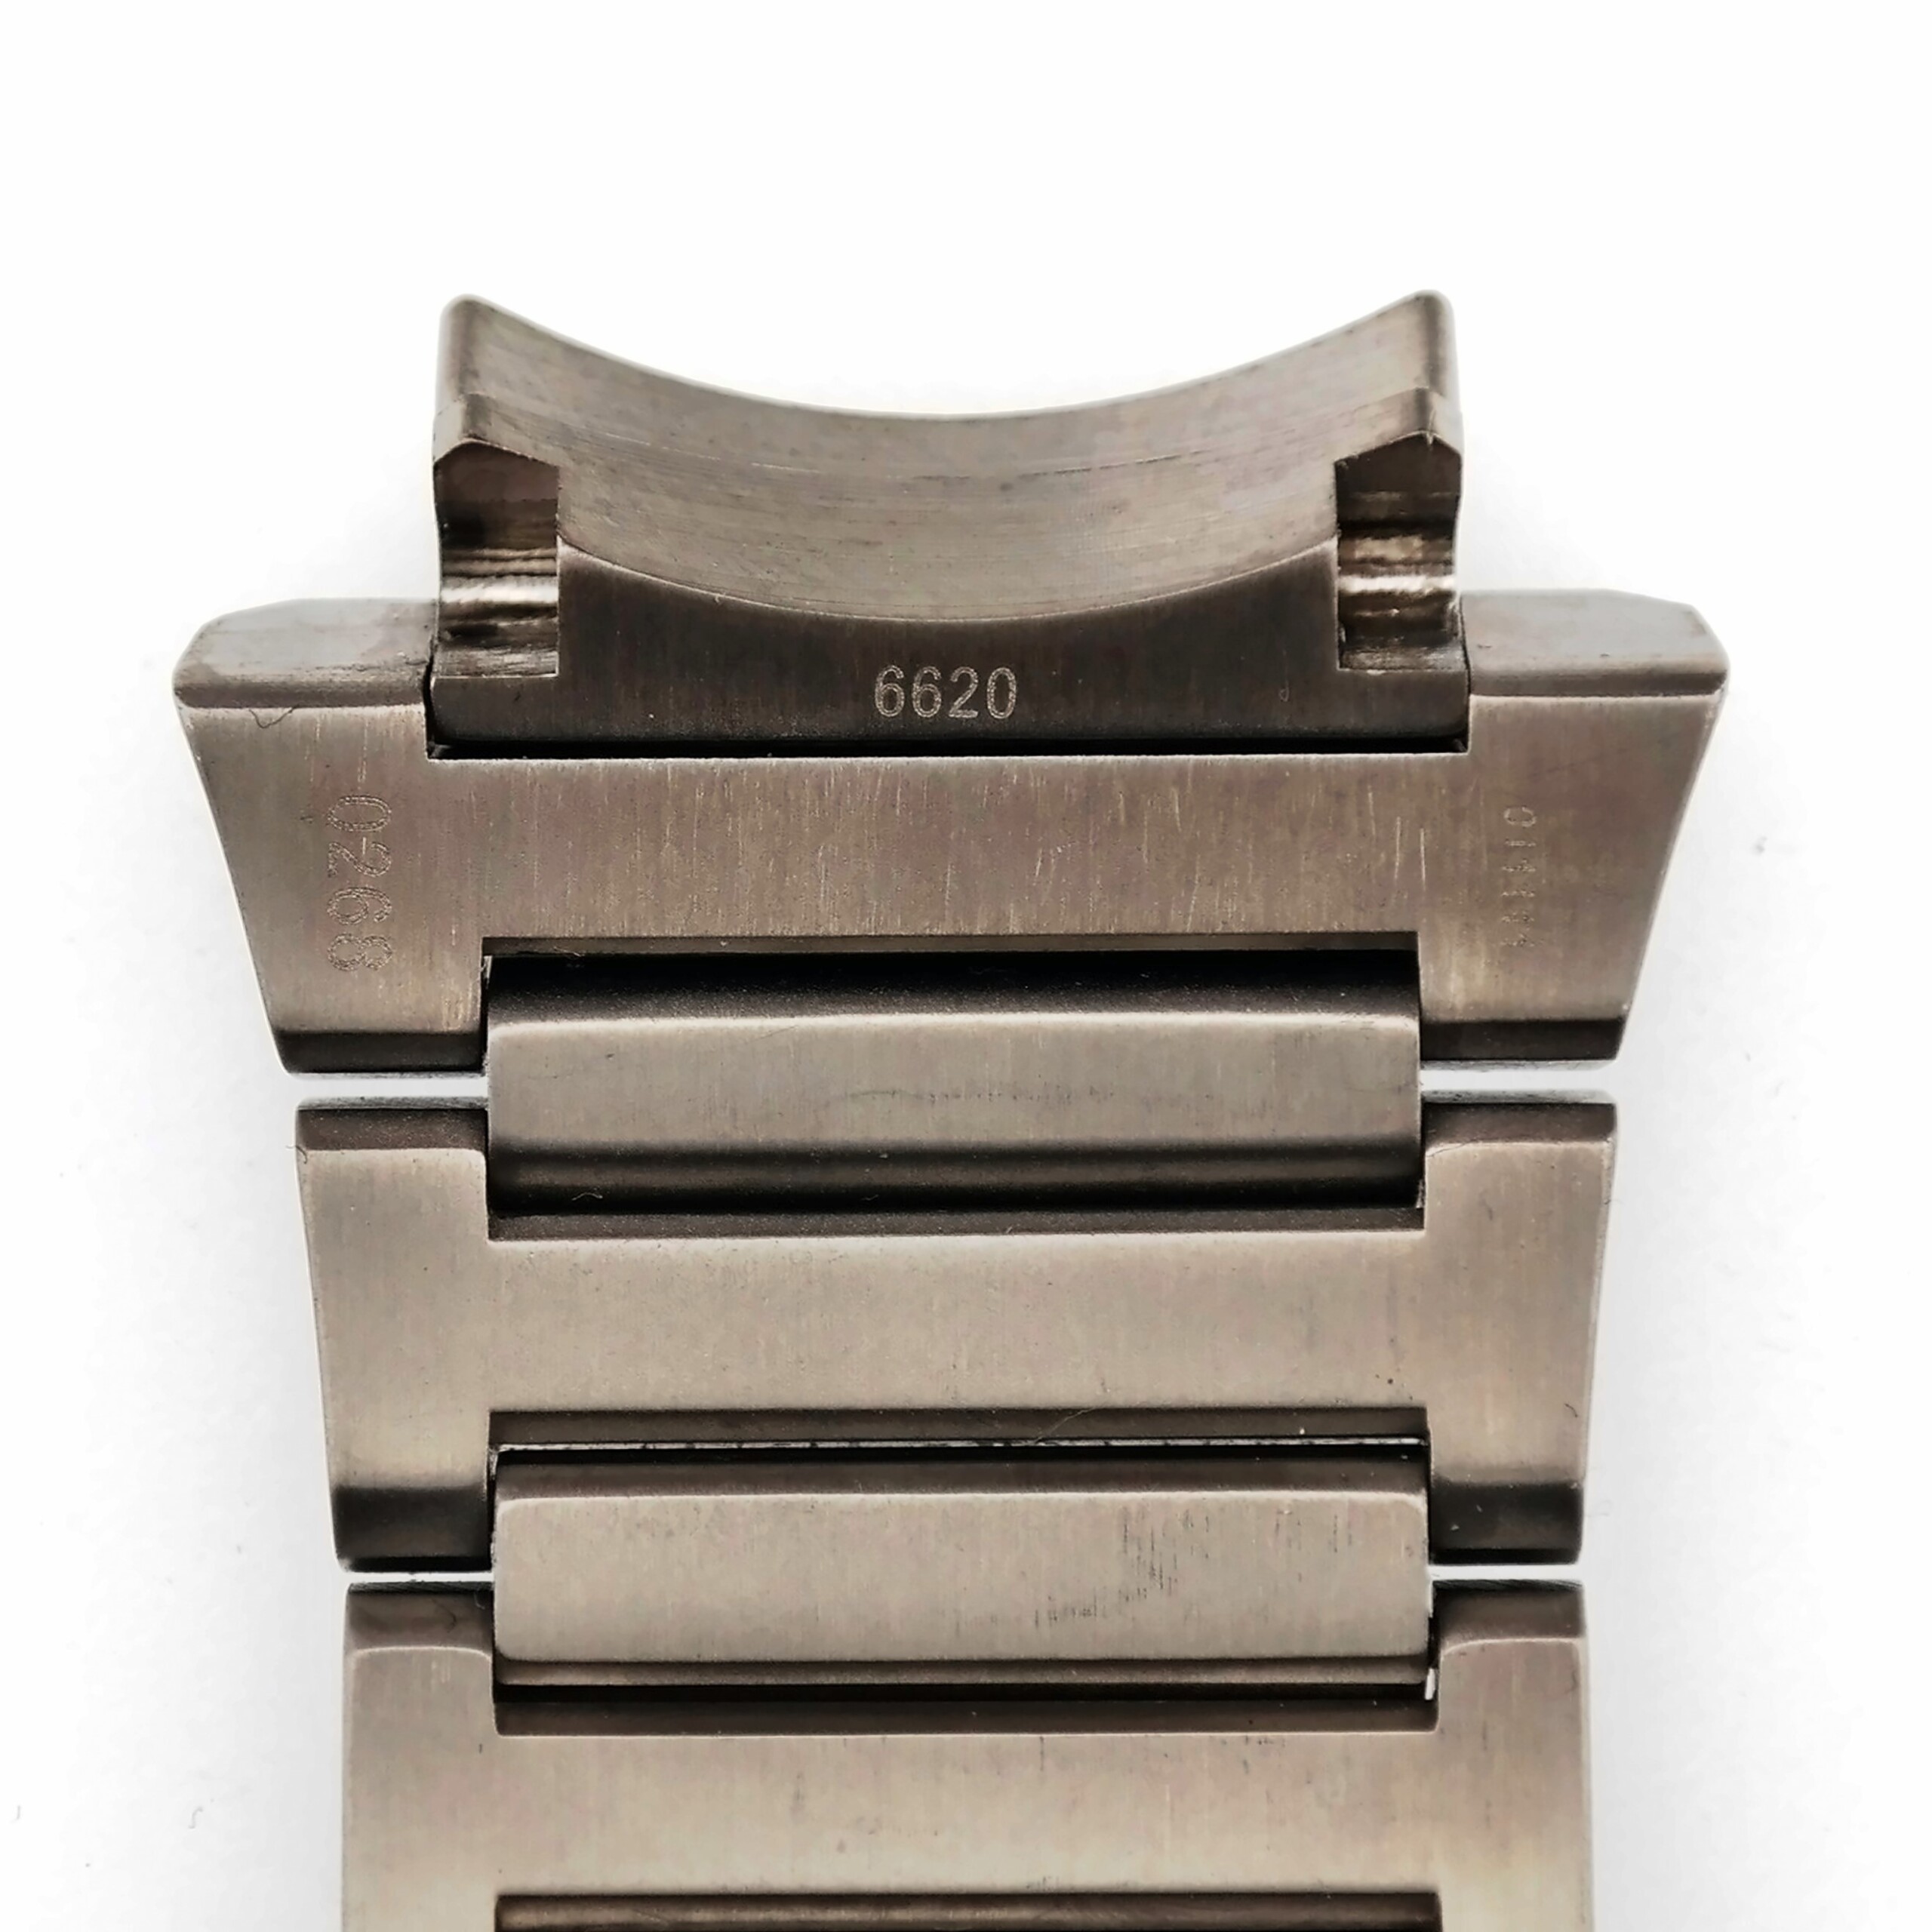 porsche design dashboard p'6620 stainless steel watch bracelet 0268 20 mm